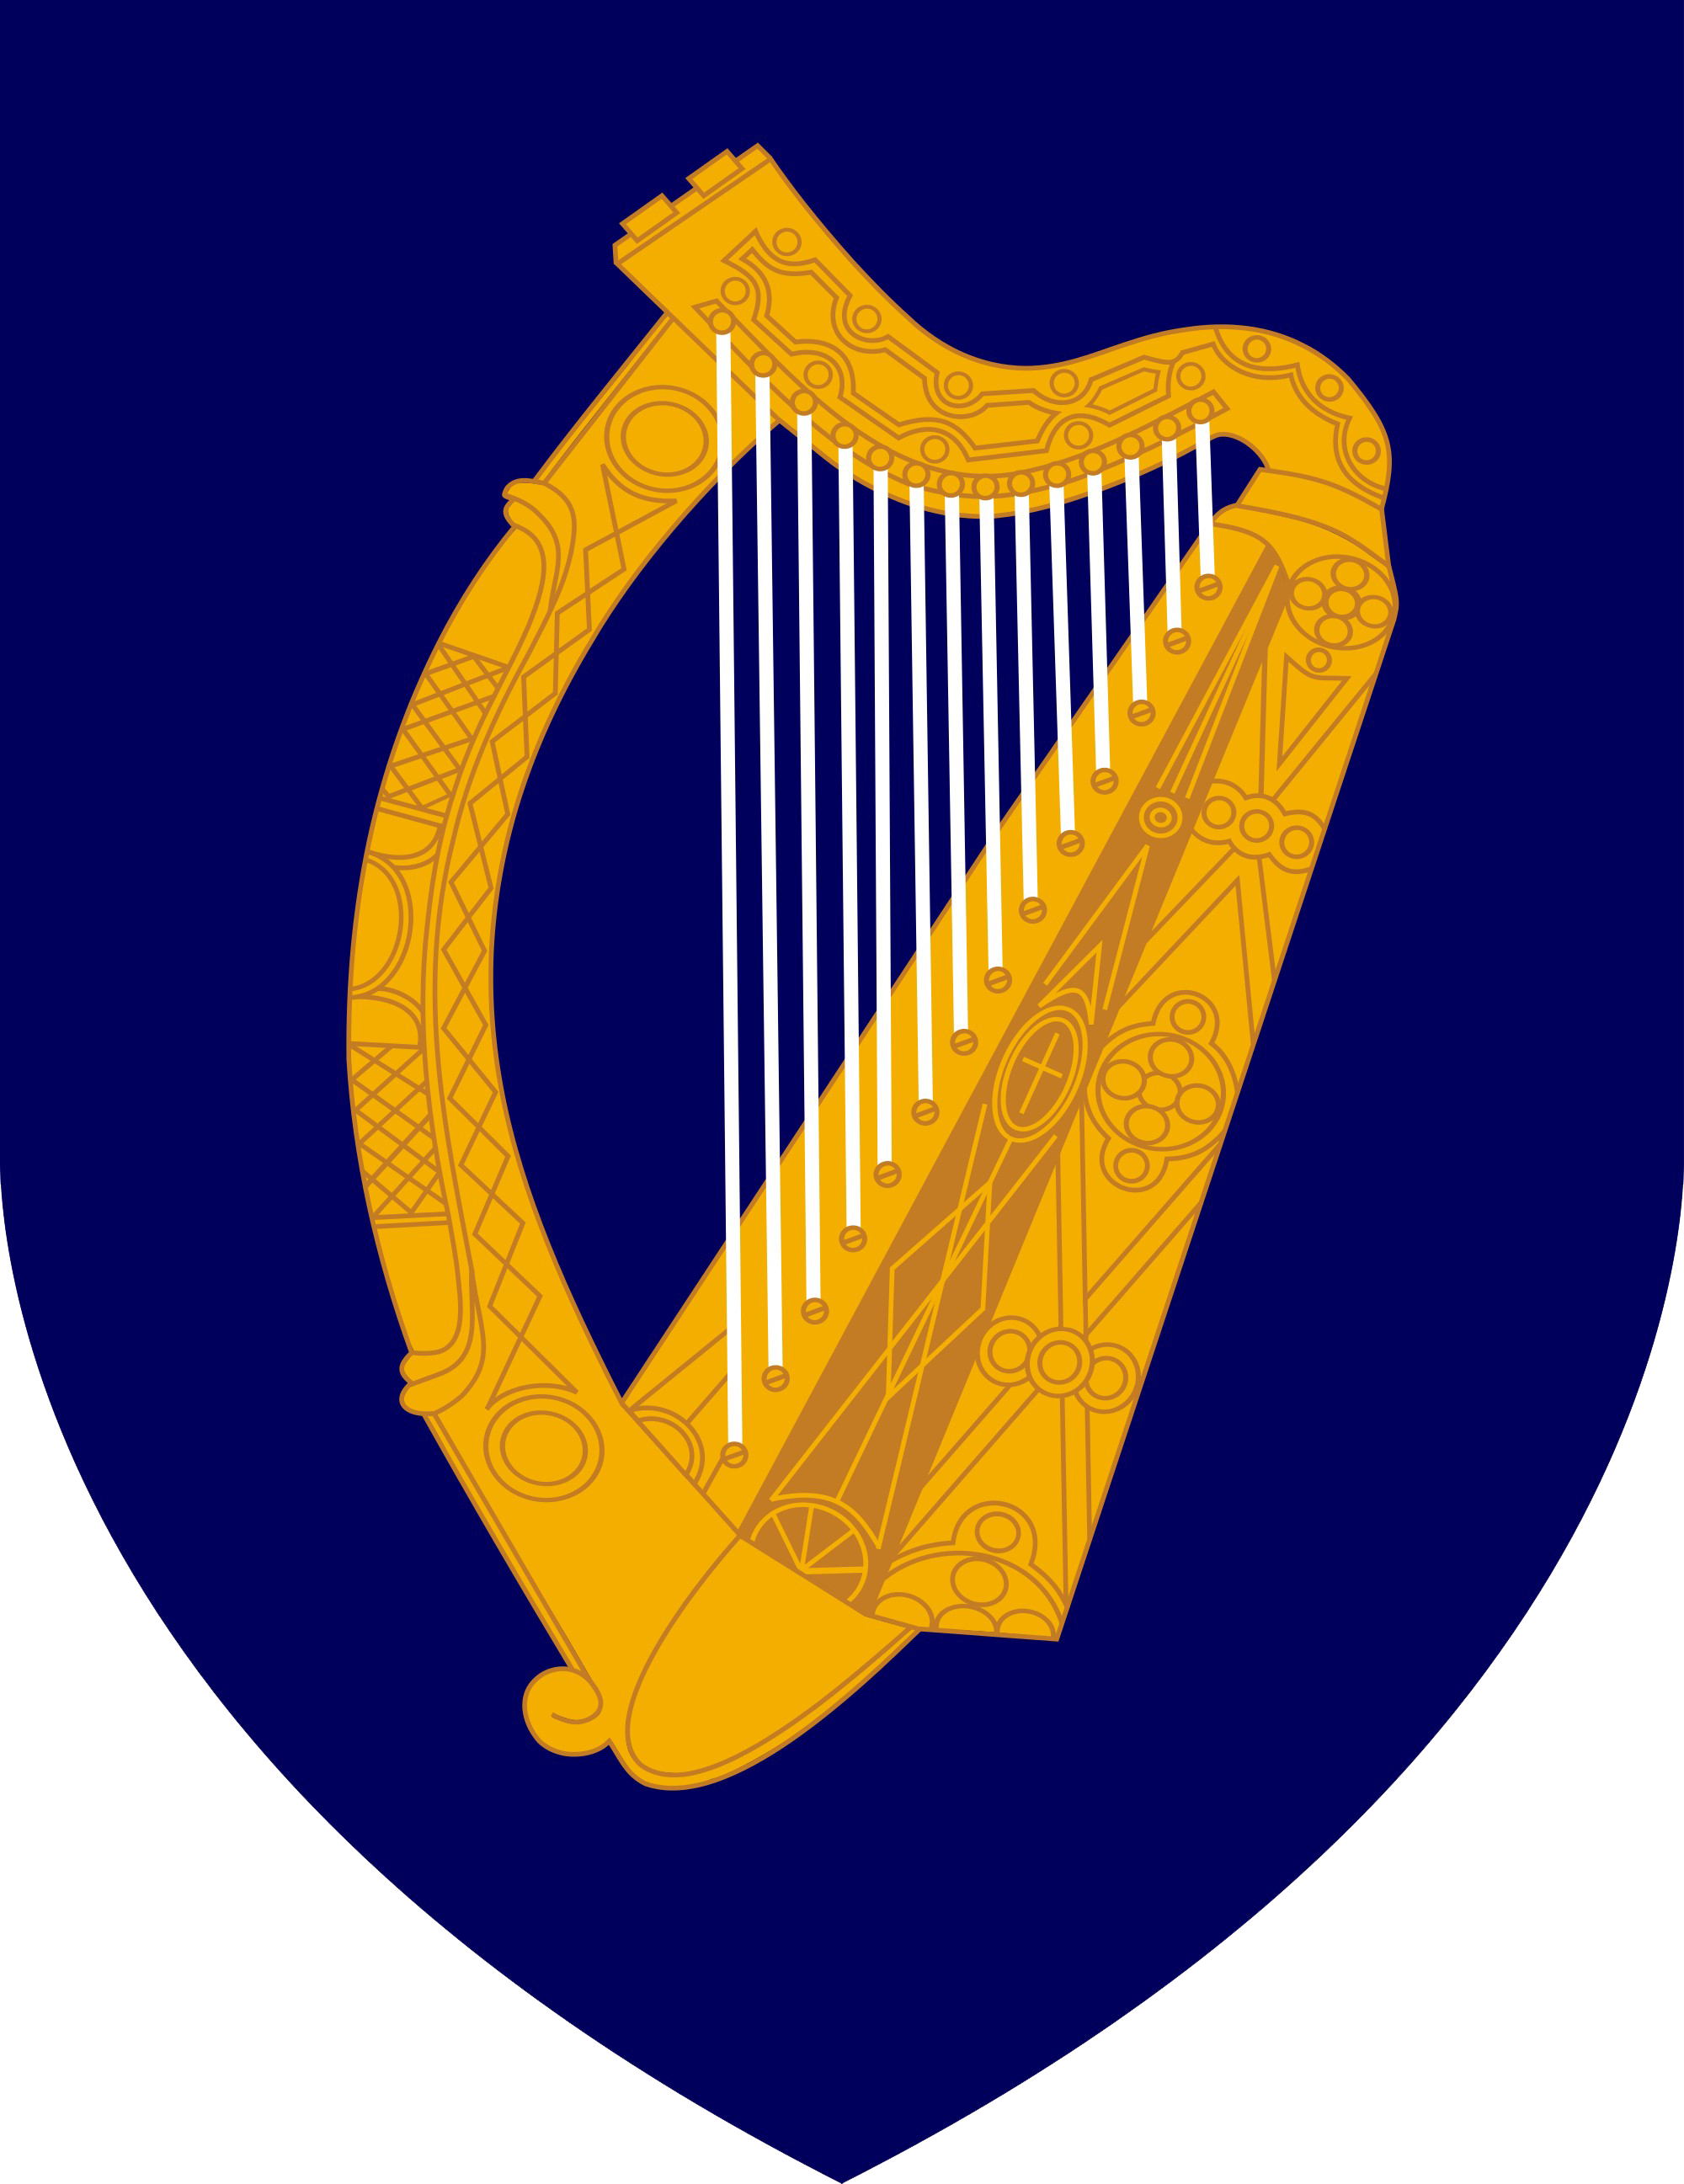 Irish Harp Instrument Transparent Image